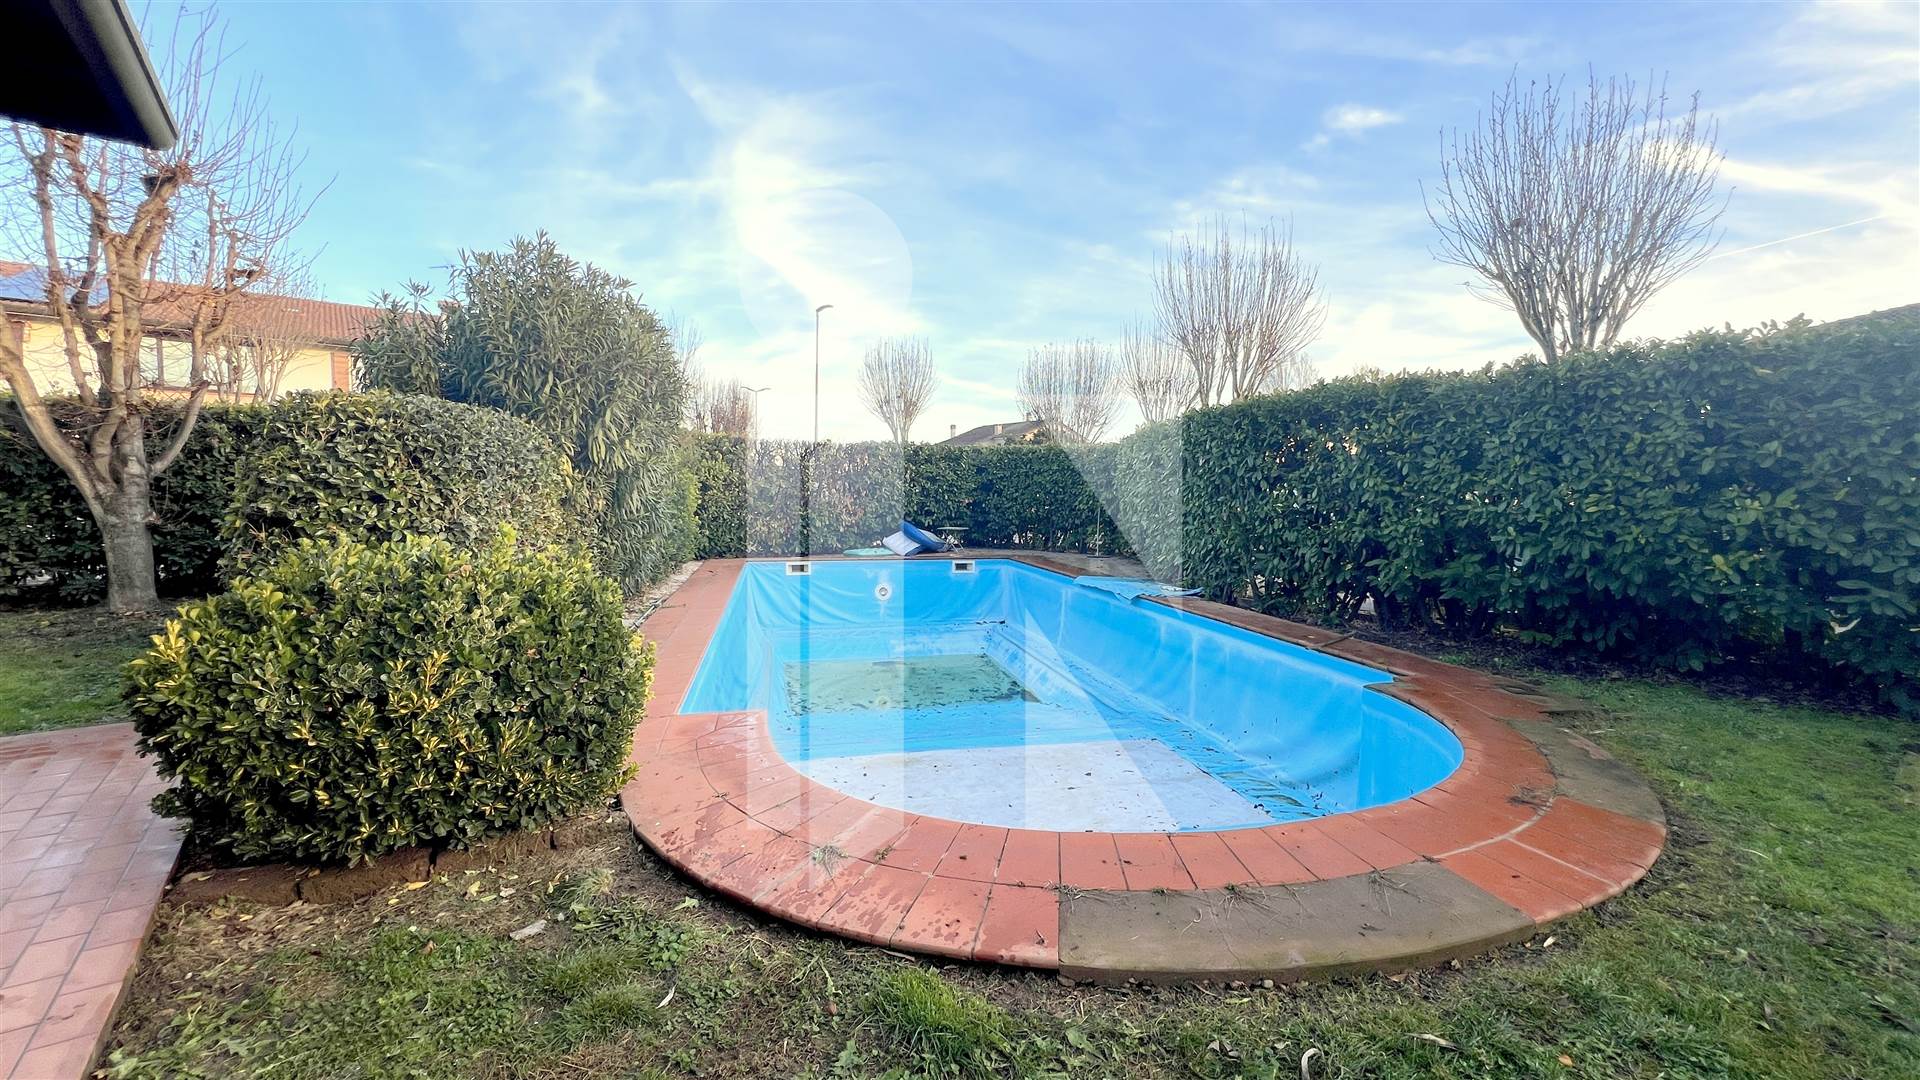 Villa Bifamigliare con ampio giardino e piscina